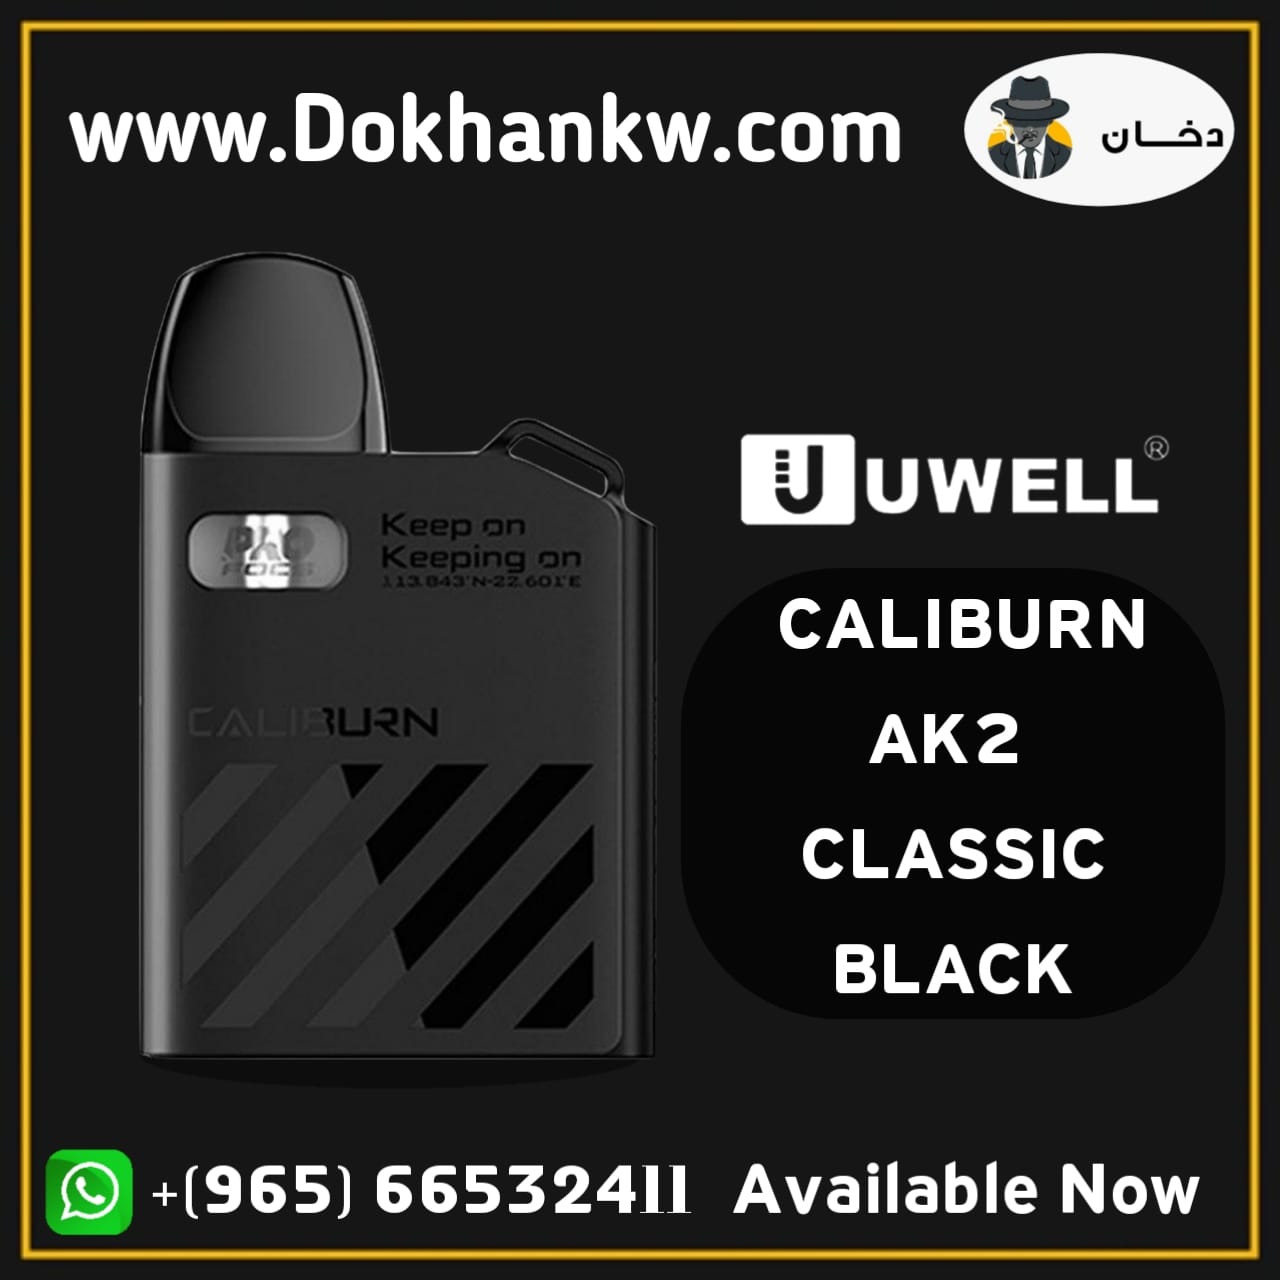 CALIBURN AK2 CLASSIC BLACK